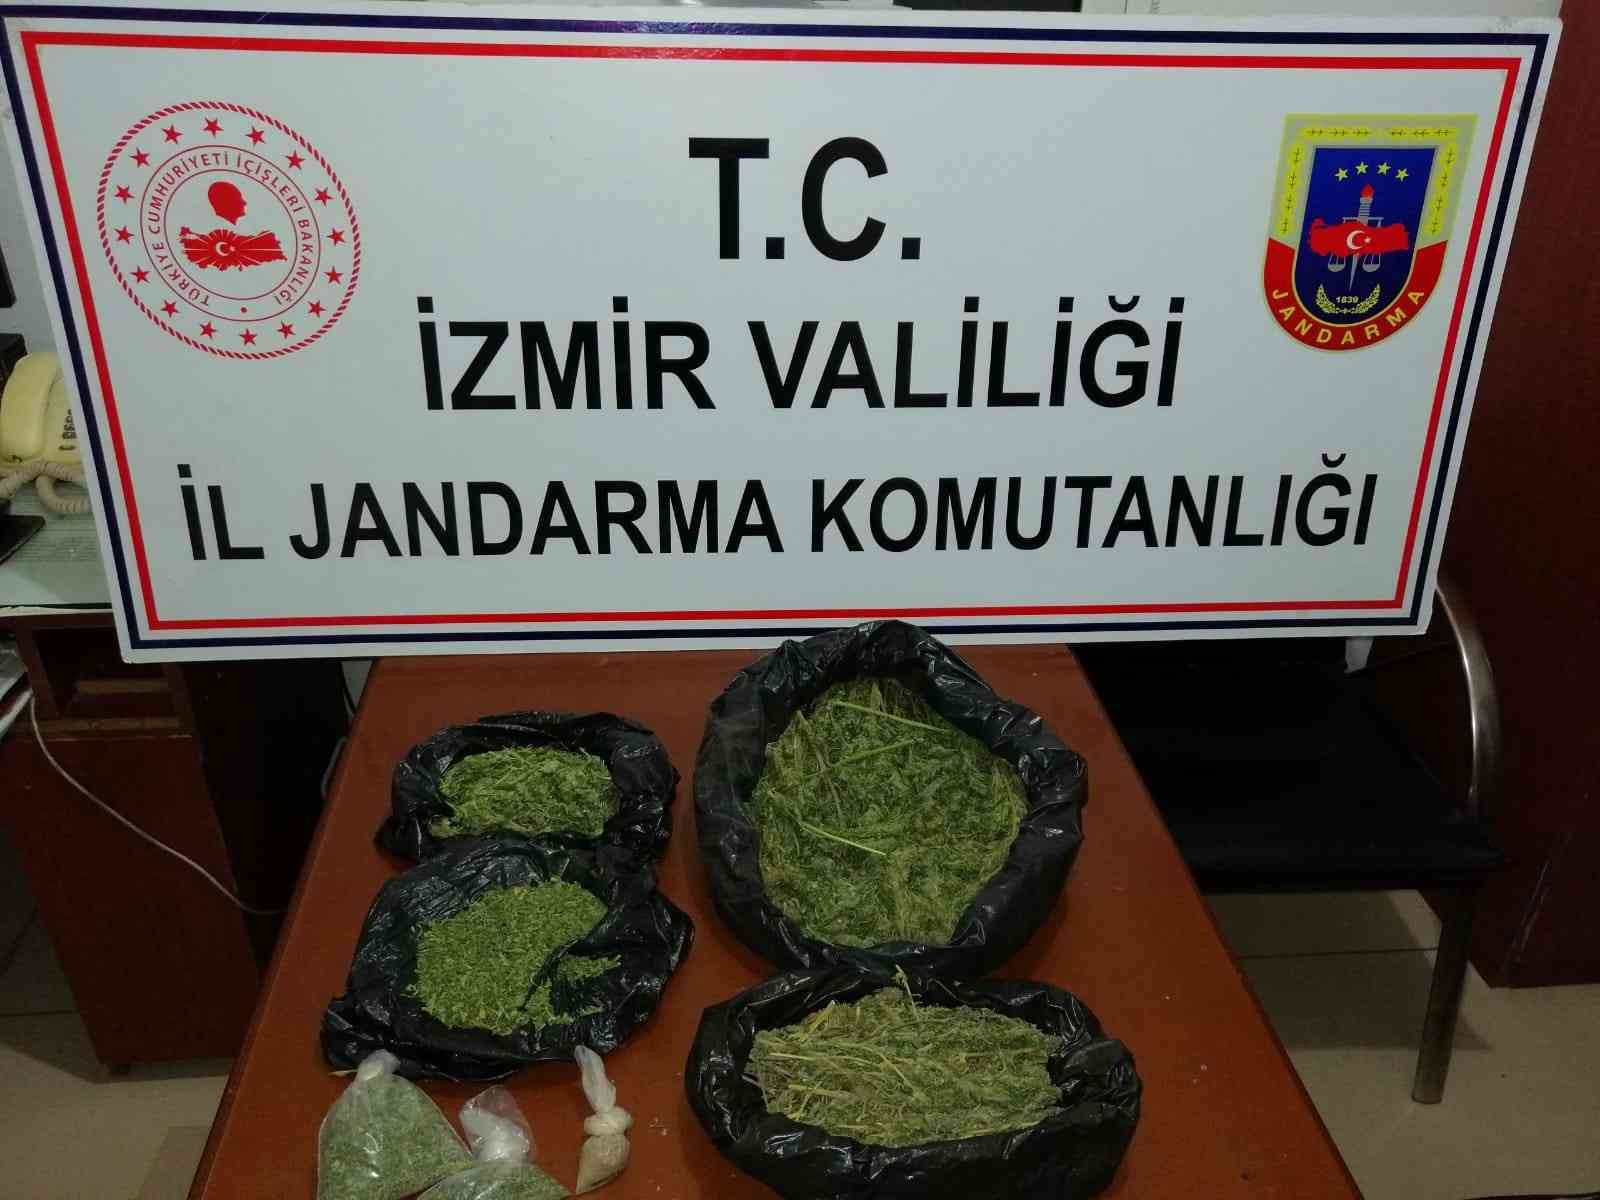 İzmir’de jandarmadan 6 ilçede uyuşturucu operasyonu #izmir